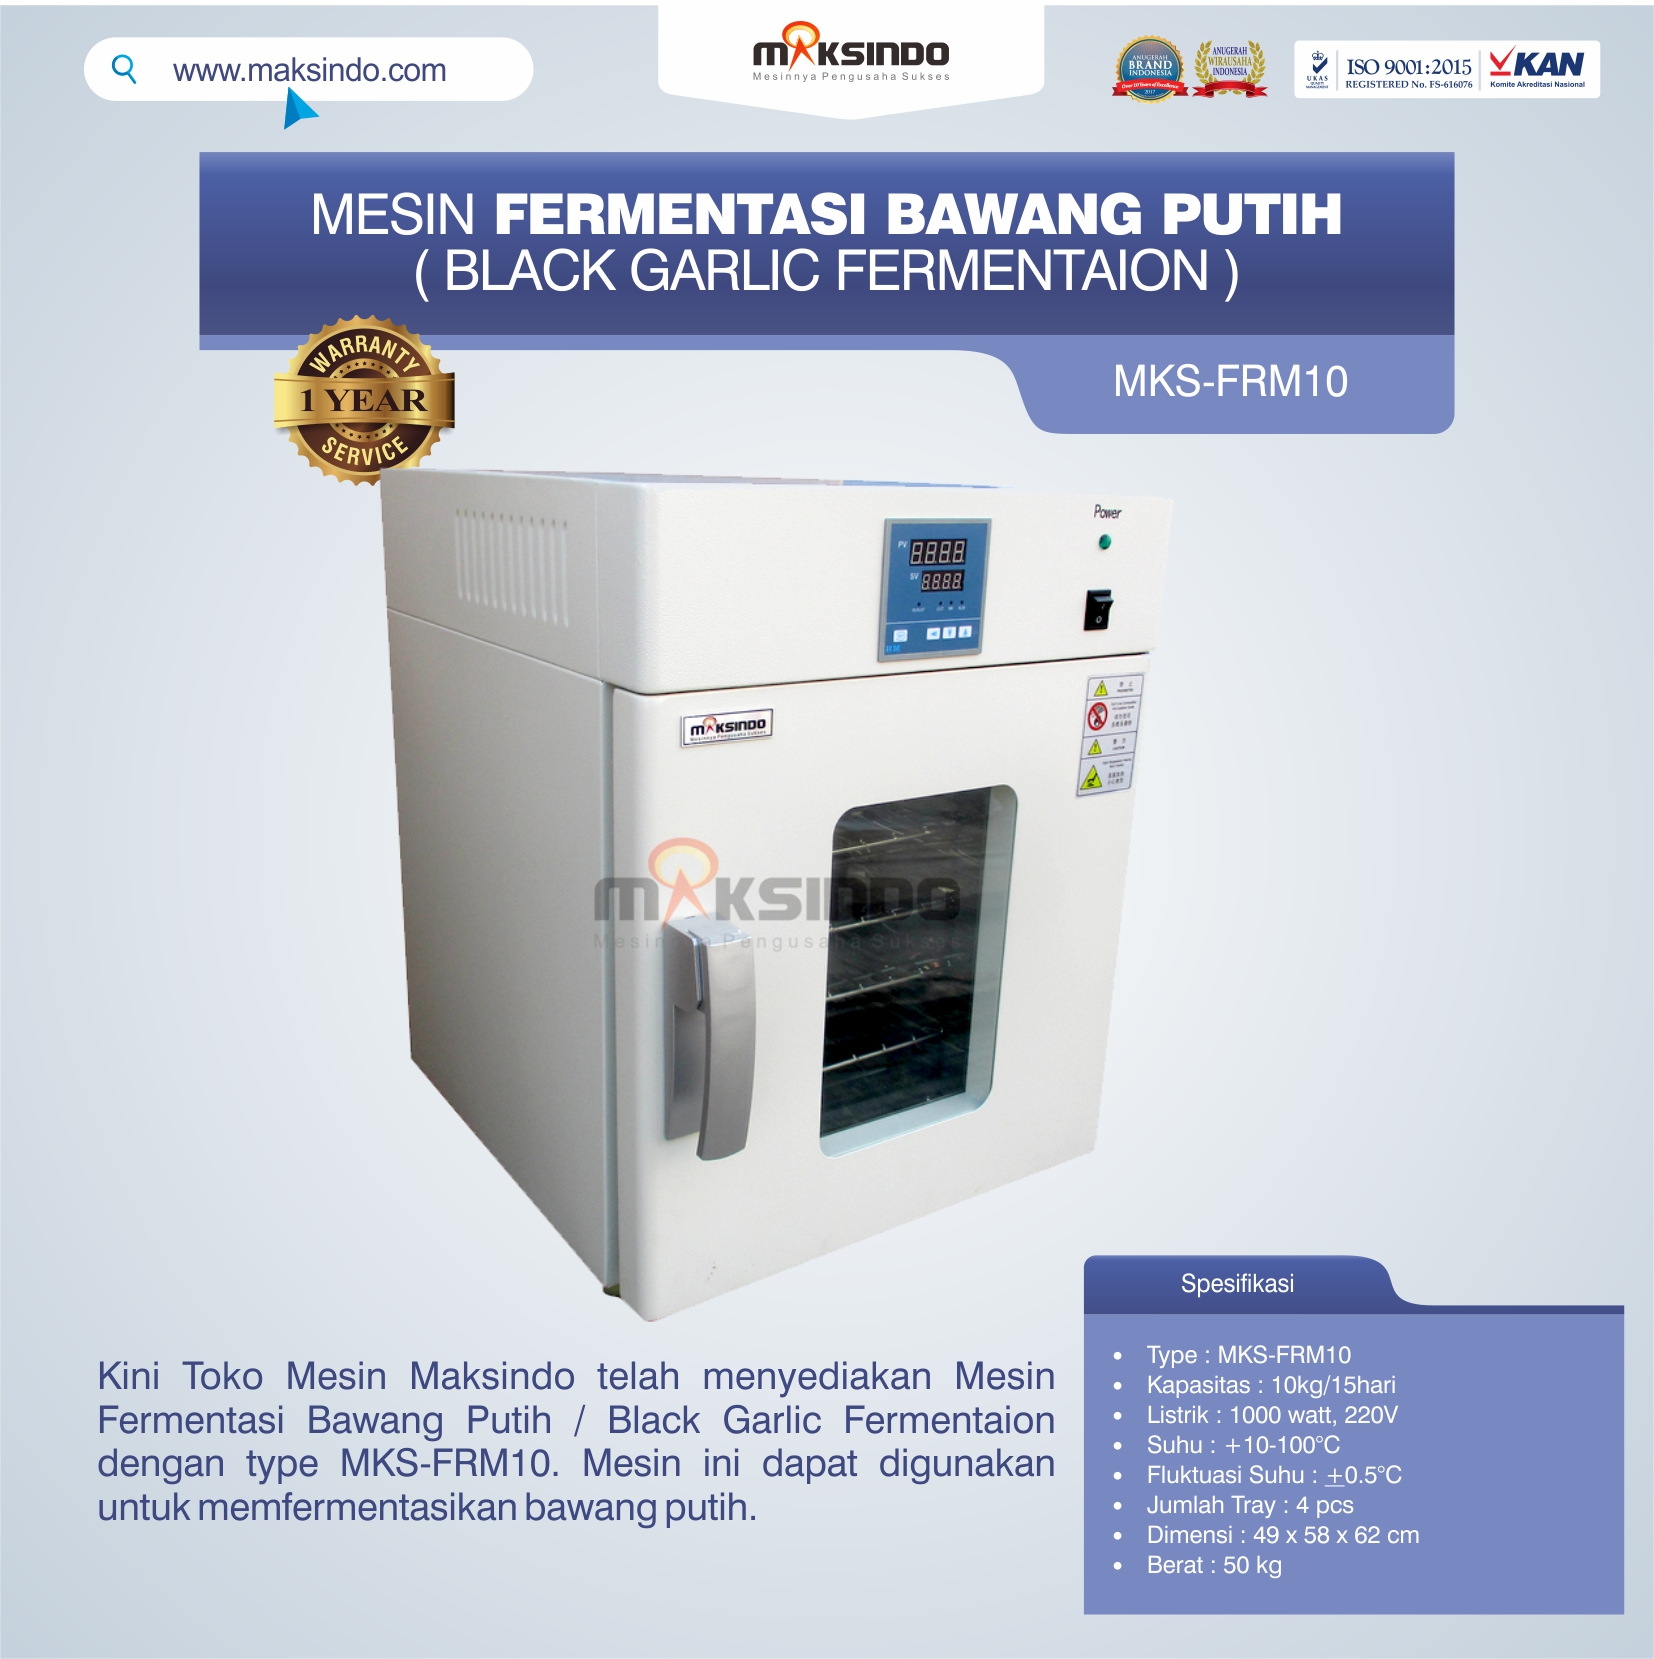 Jual Mesin Fermentasi Bawang Putih / Black Garlic Fermentaion MKS-FRM10 di Bogor